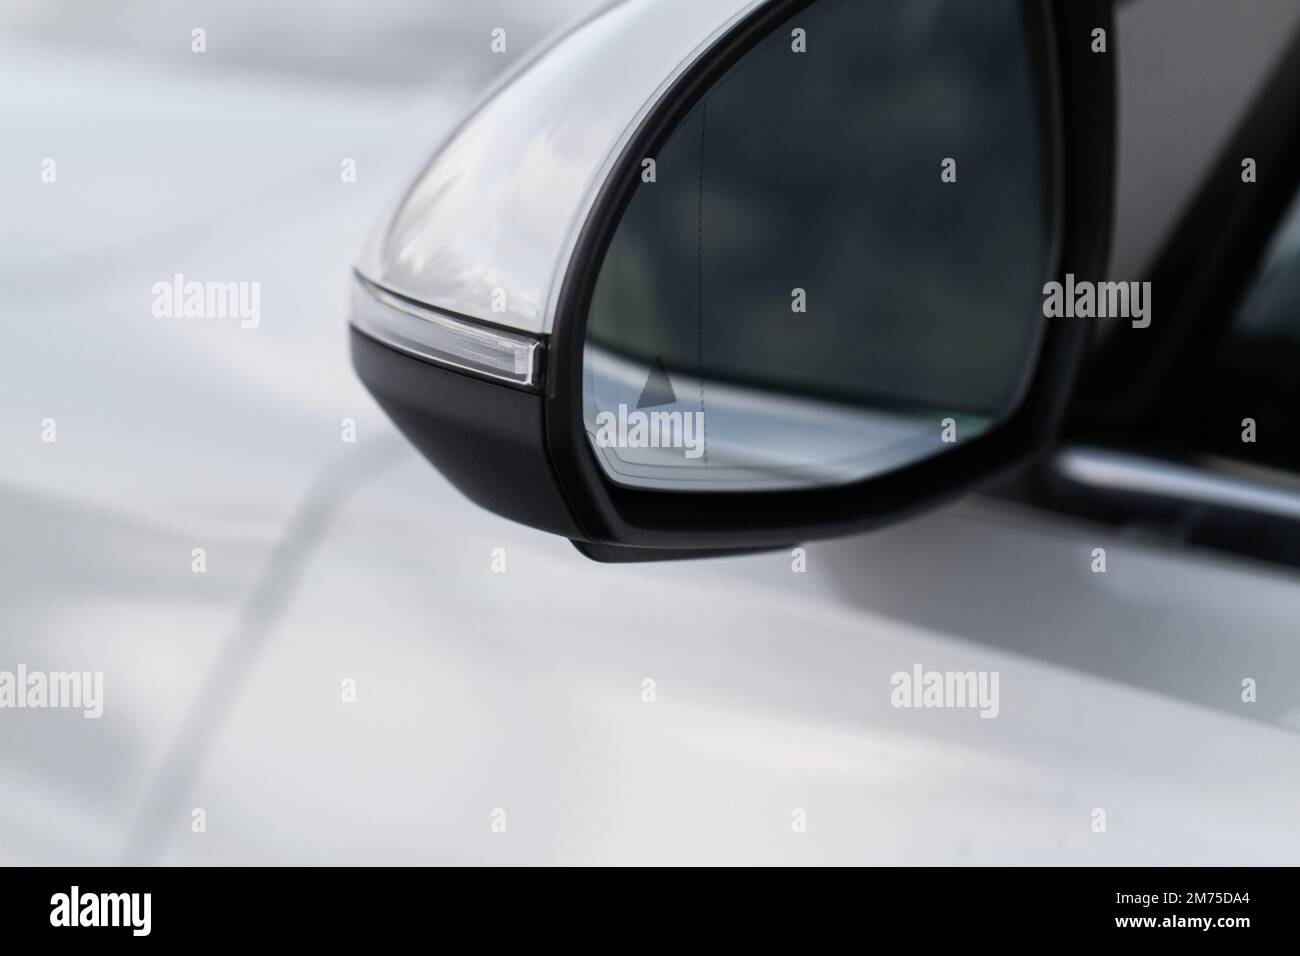 Moderno sistema BCW per auto. Spia dei punti ciechi sullo specchietto retrovisore della vettura. Avvertenza di collisione dei punti ciechi. Foto Stock